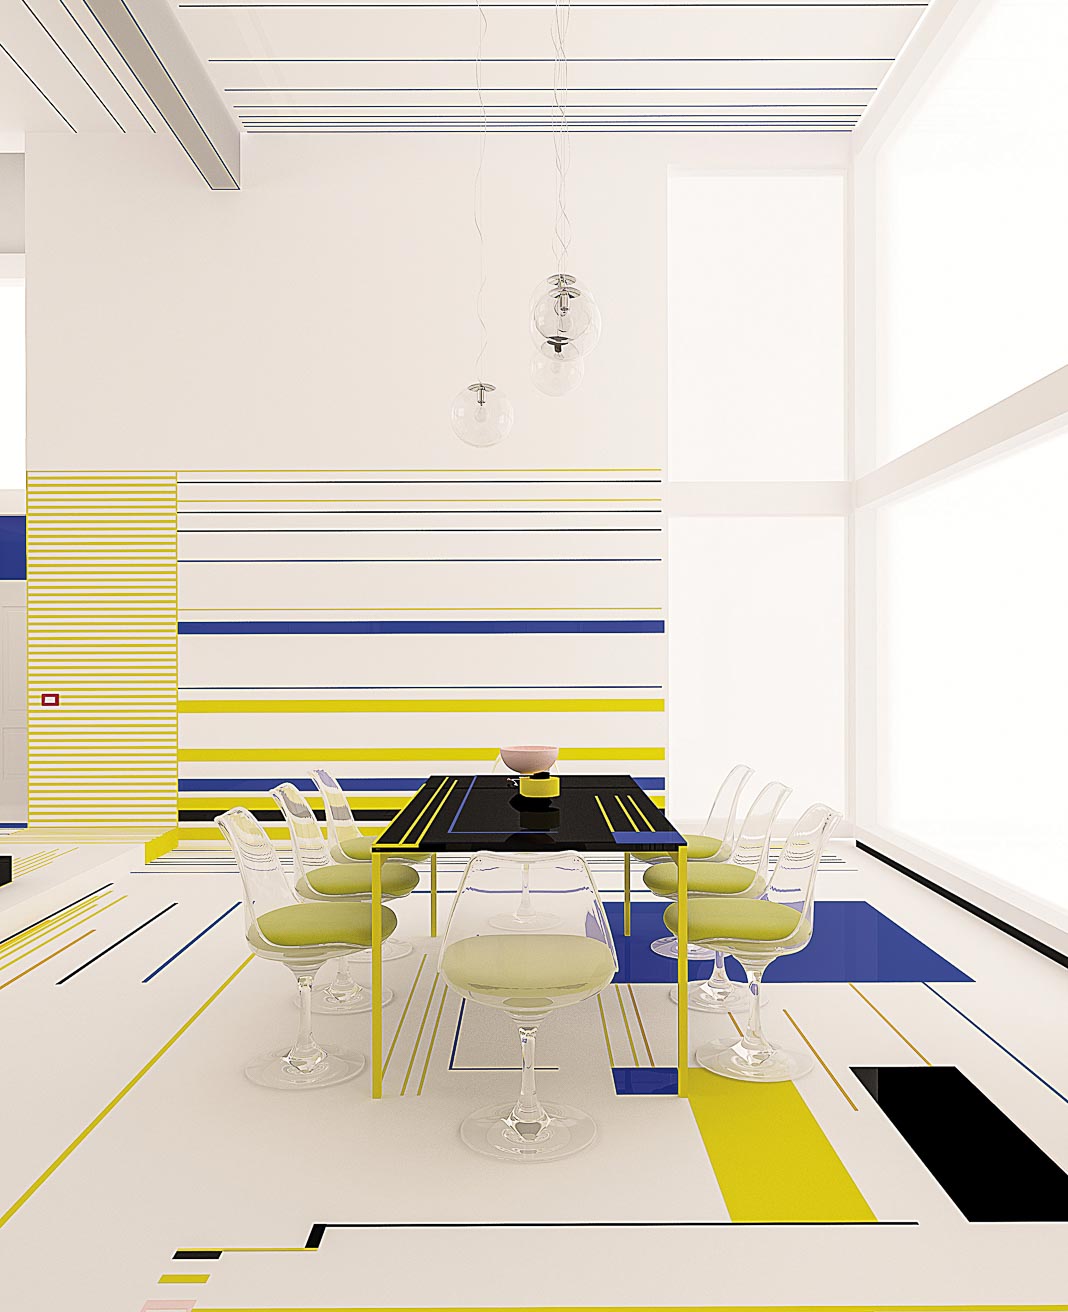 Bữa điểm tâm với Mondrian - Sống với sắc màu Piet Mondrian 15